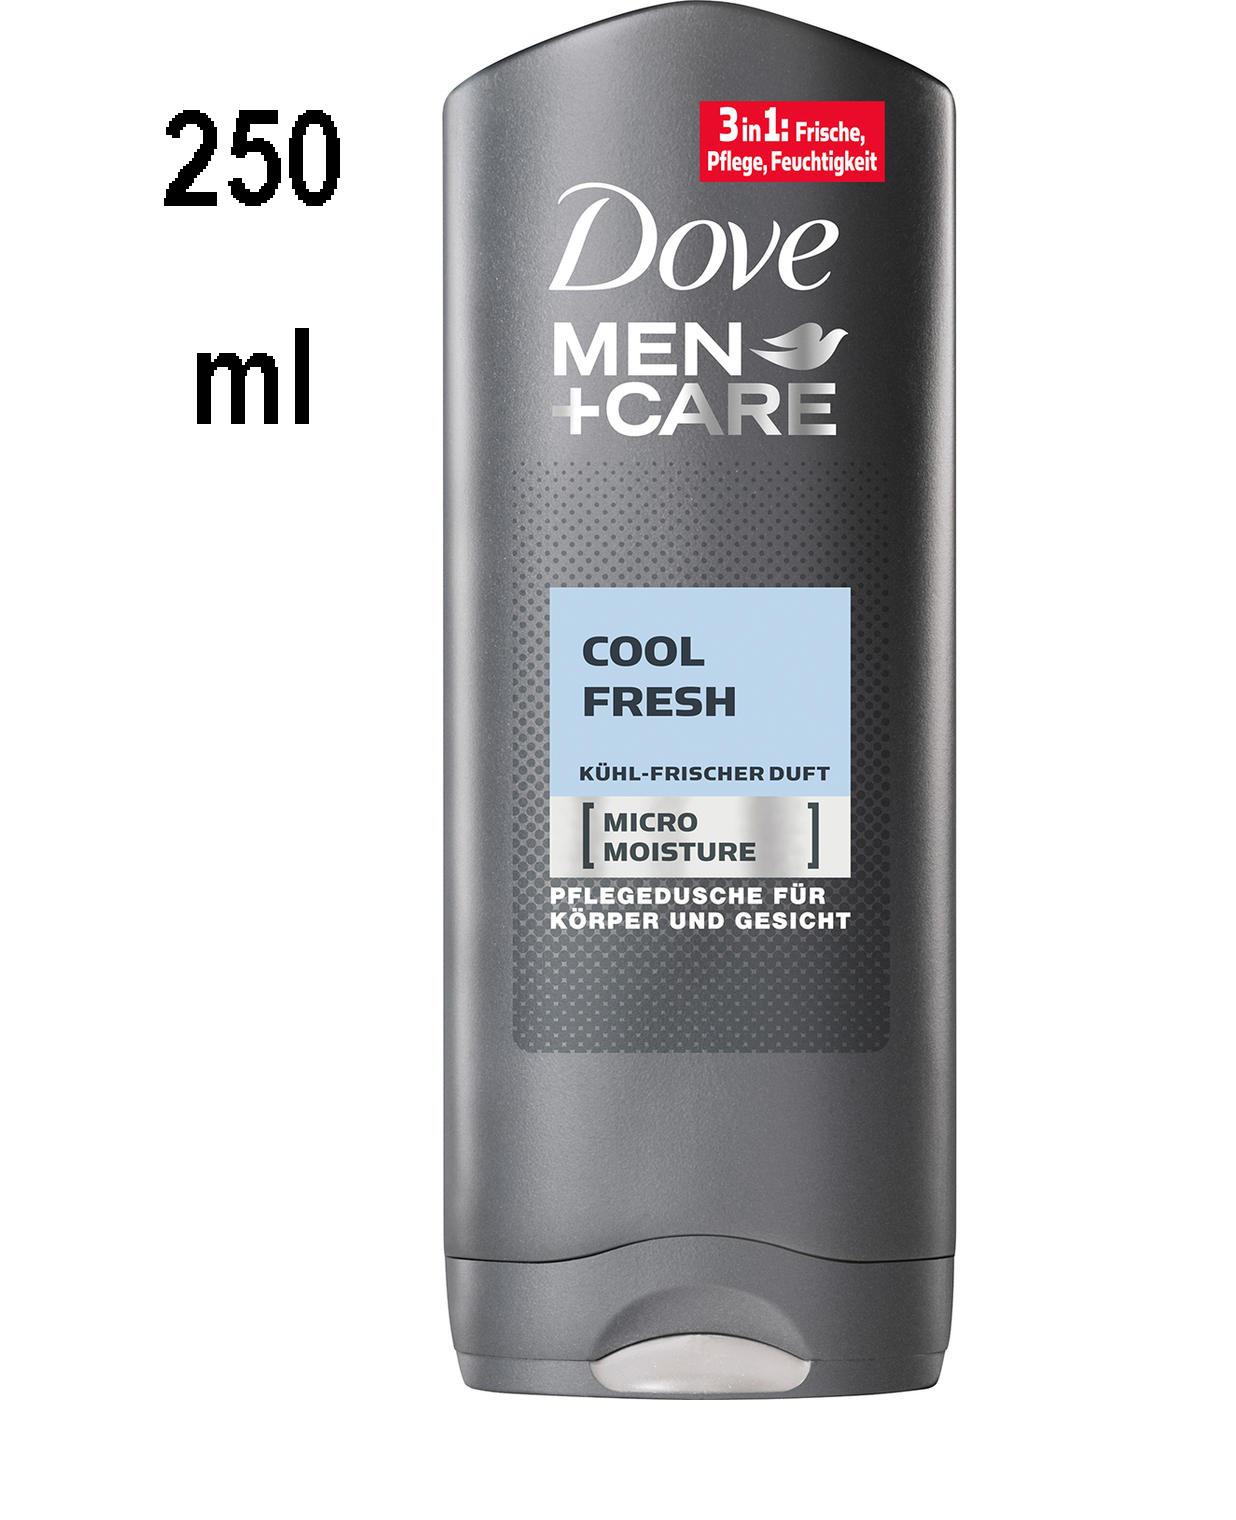 DOVE Showergel Men + Care "Cool 3in1: freshness, care, moisture - ml